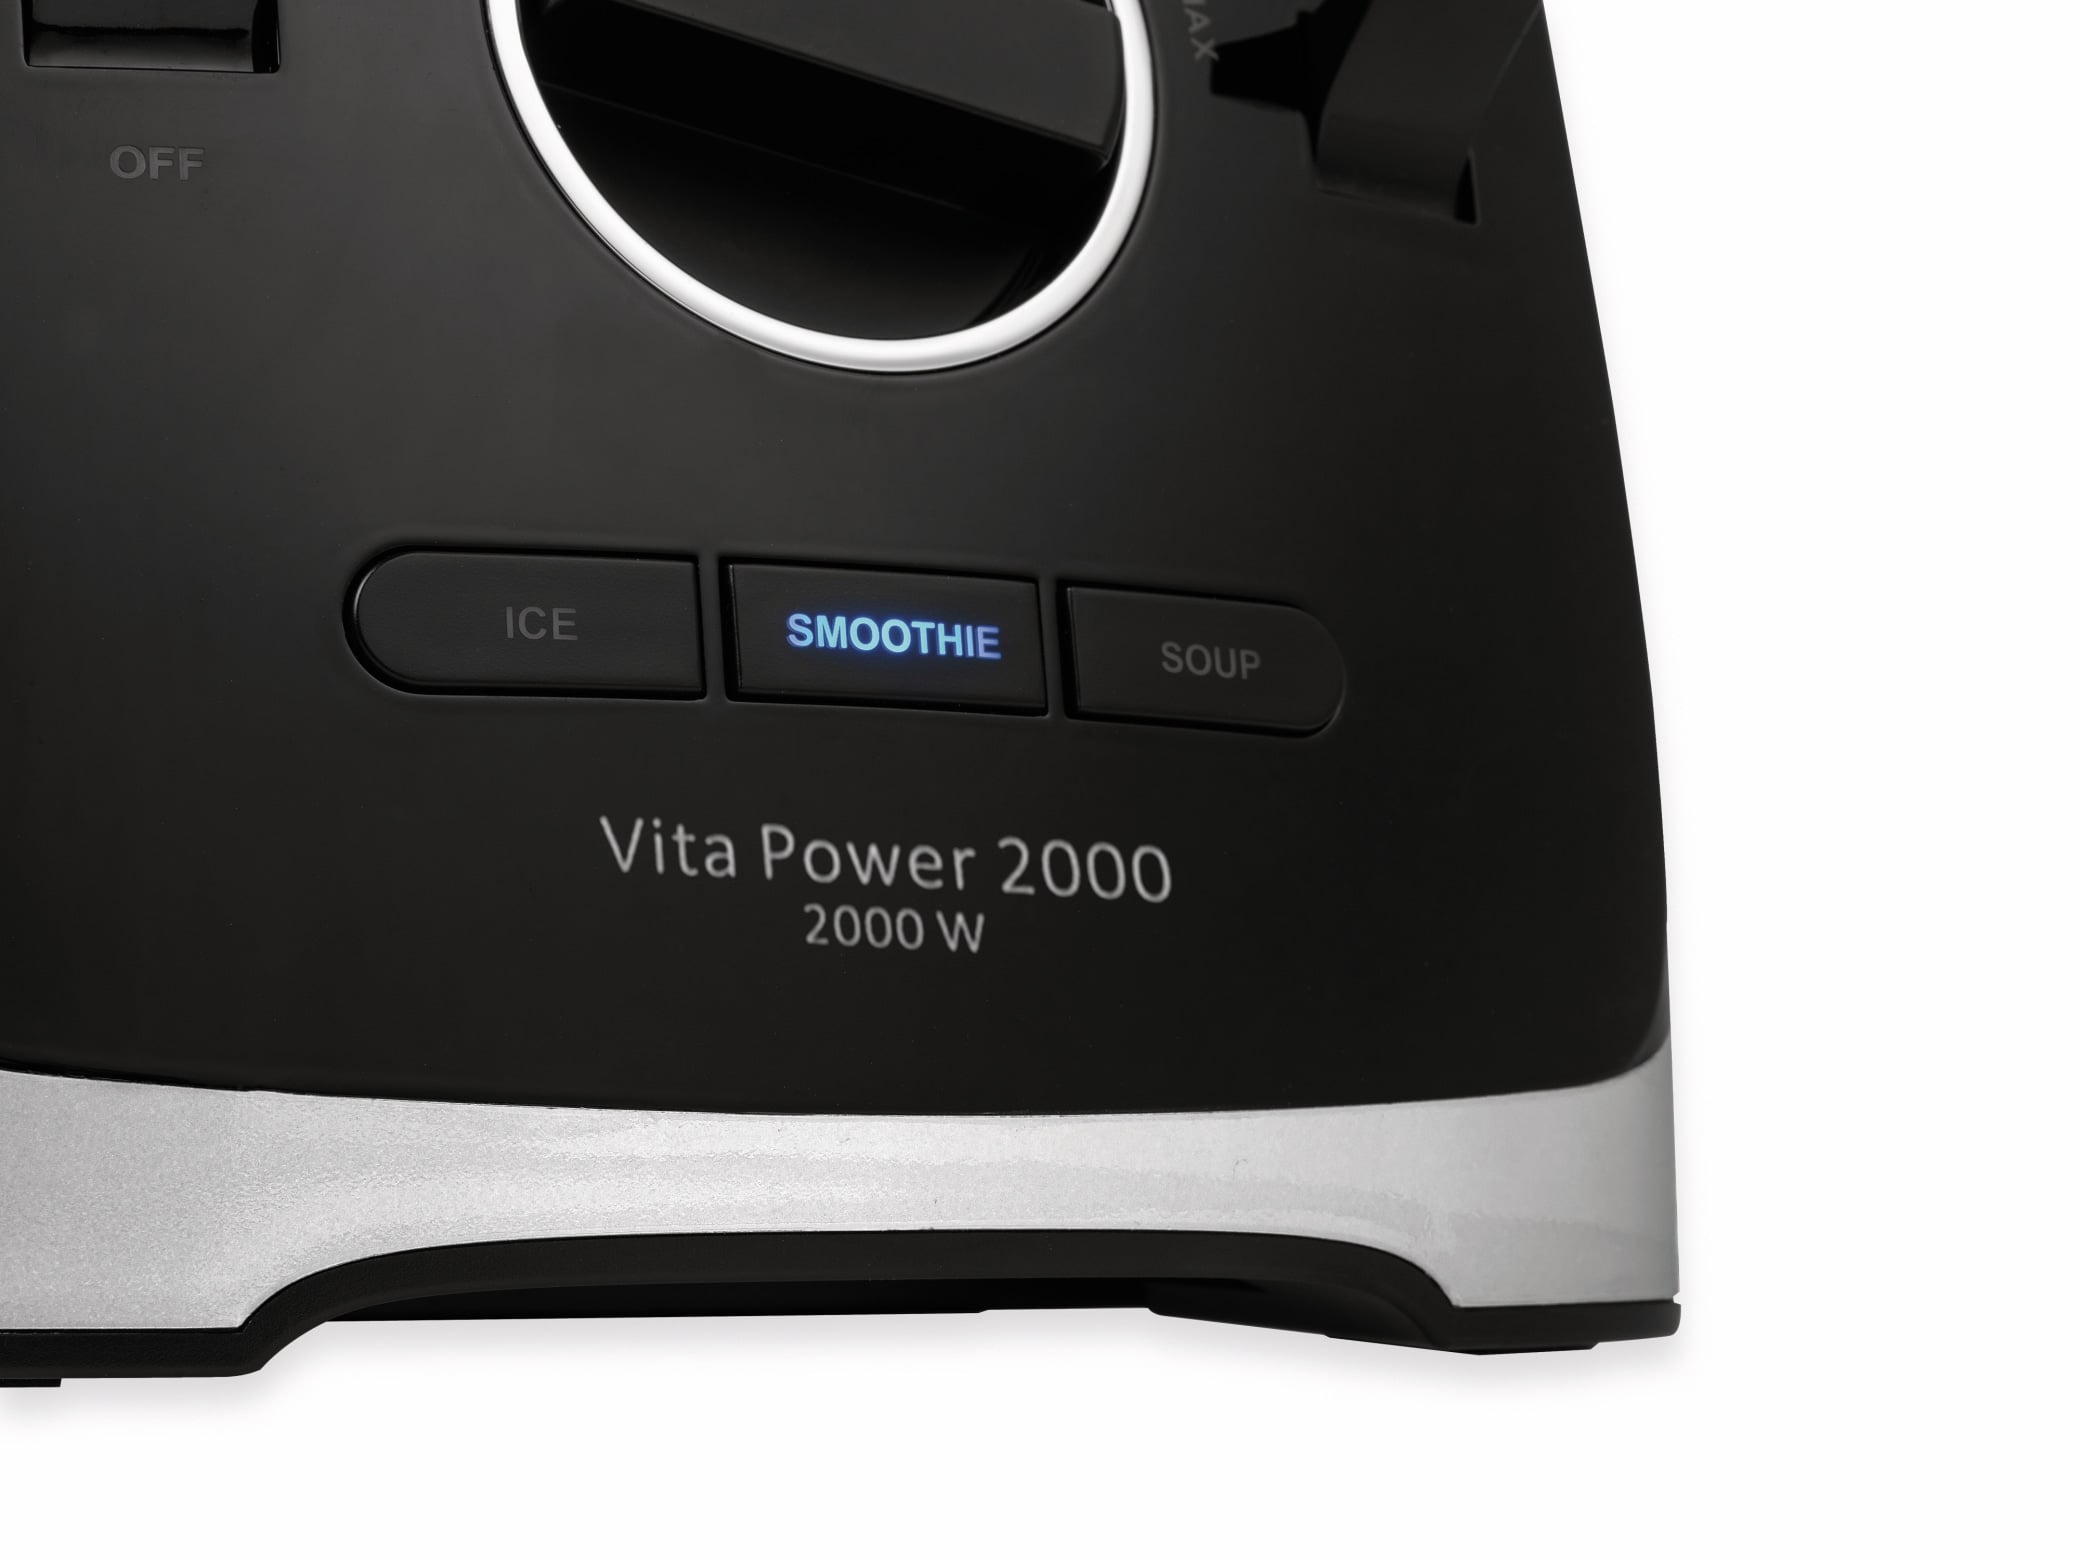 TRISTAR Standmixer BL-4473 VitaPower, 2000 W, 2 L